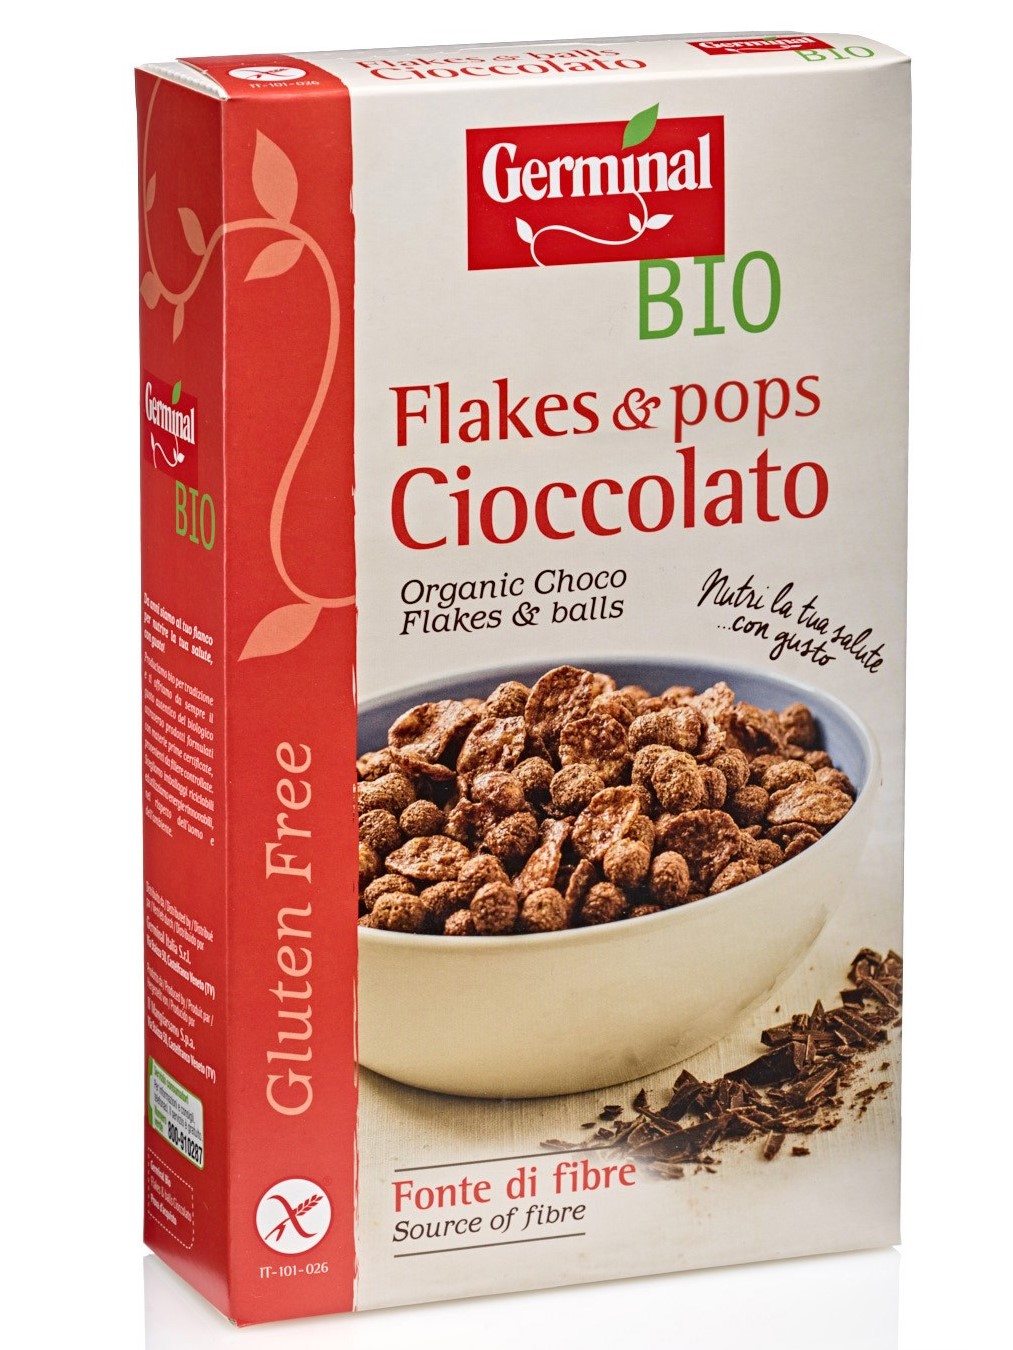 Immagine confezione Flakes & pops Cioccolato Senza Glutine Germinal Bio